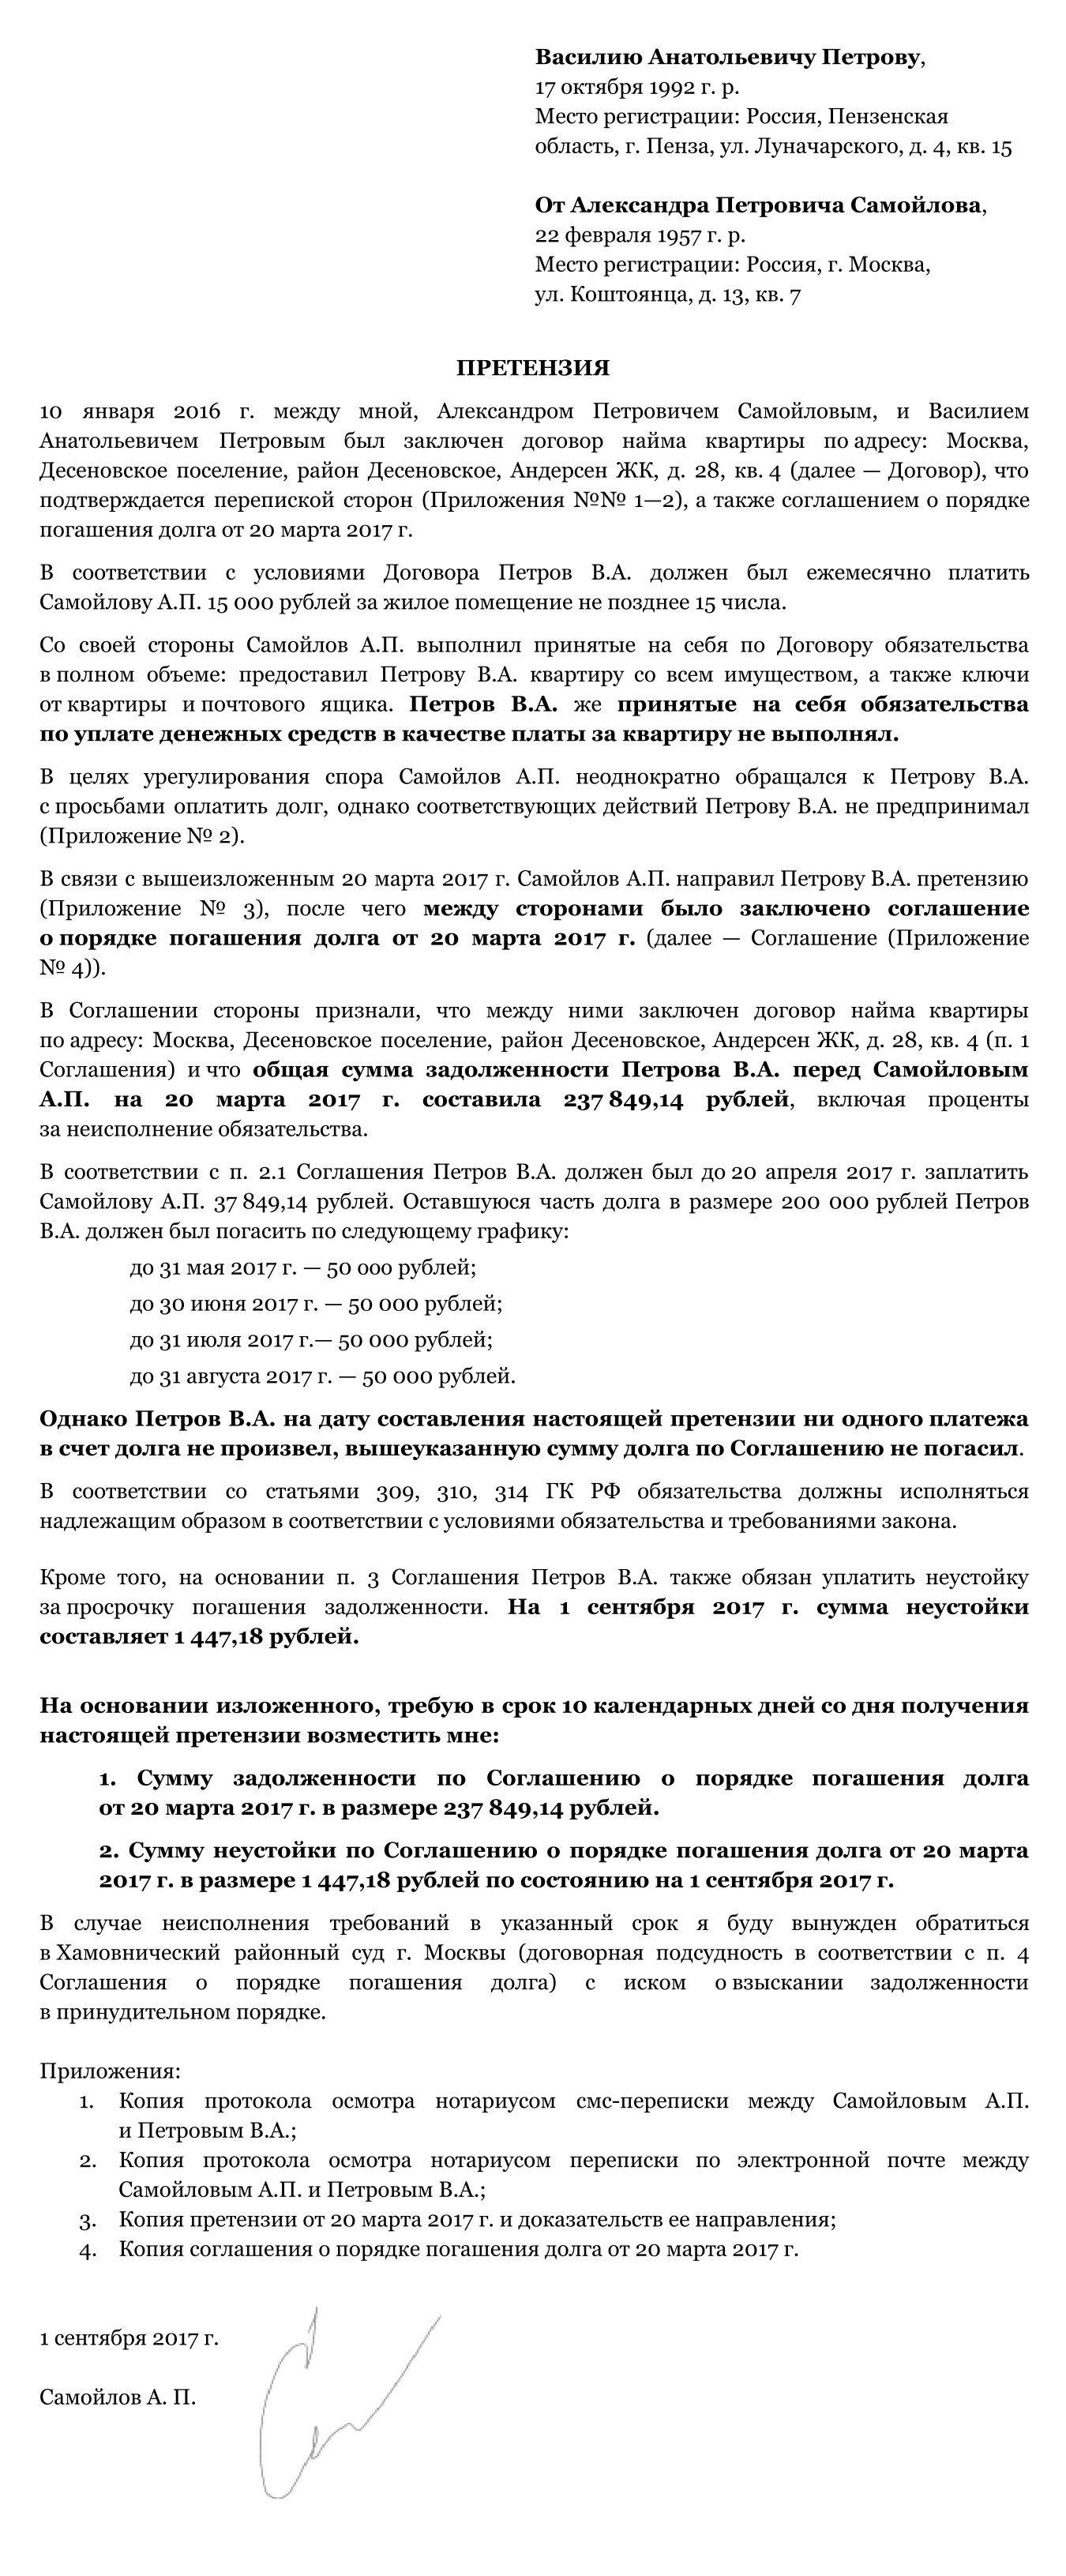 Соглашение, на основании которого будет разрешаться спор Александра Петровича и Васи